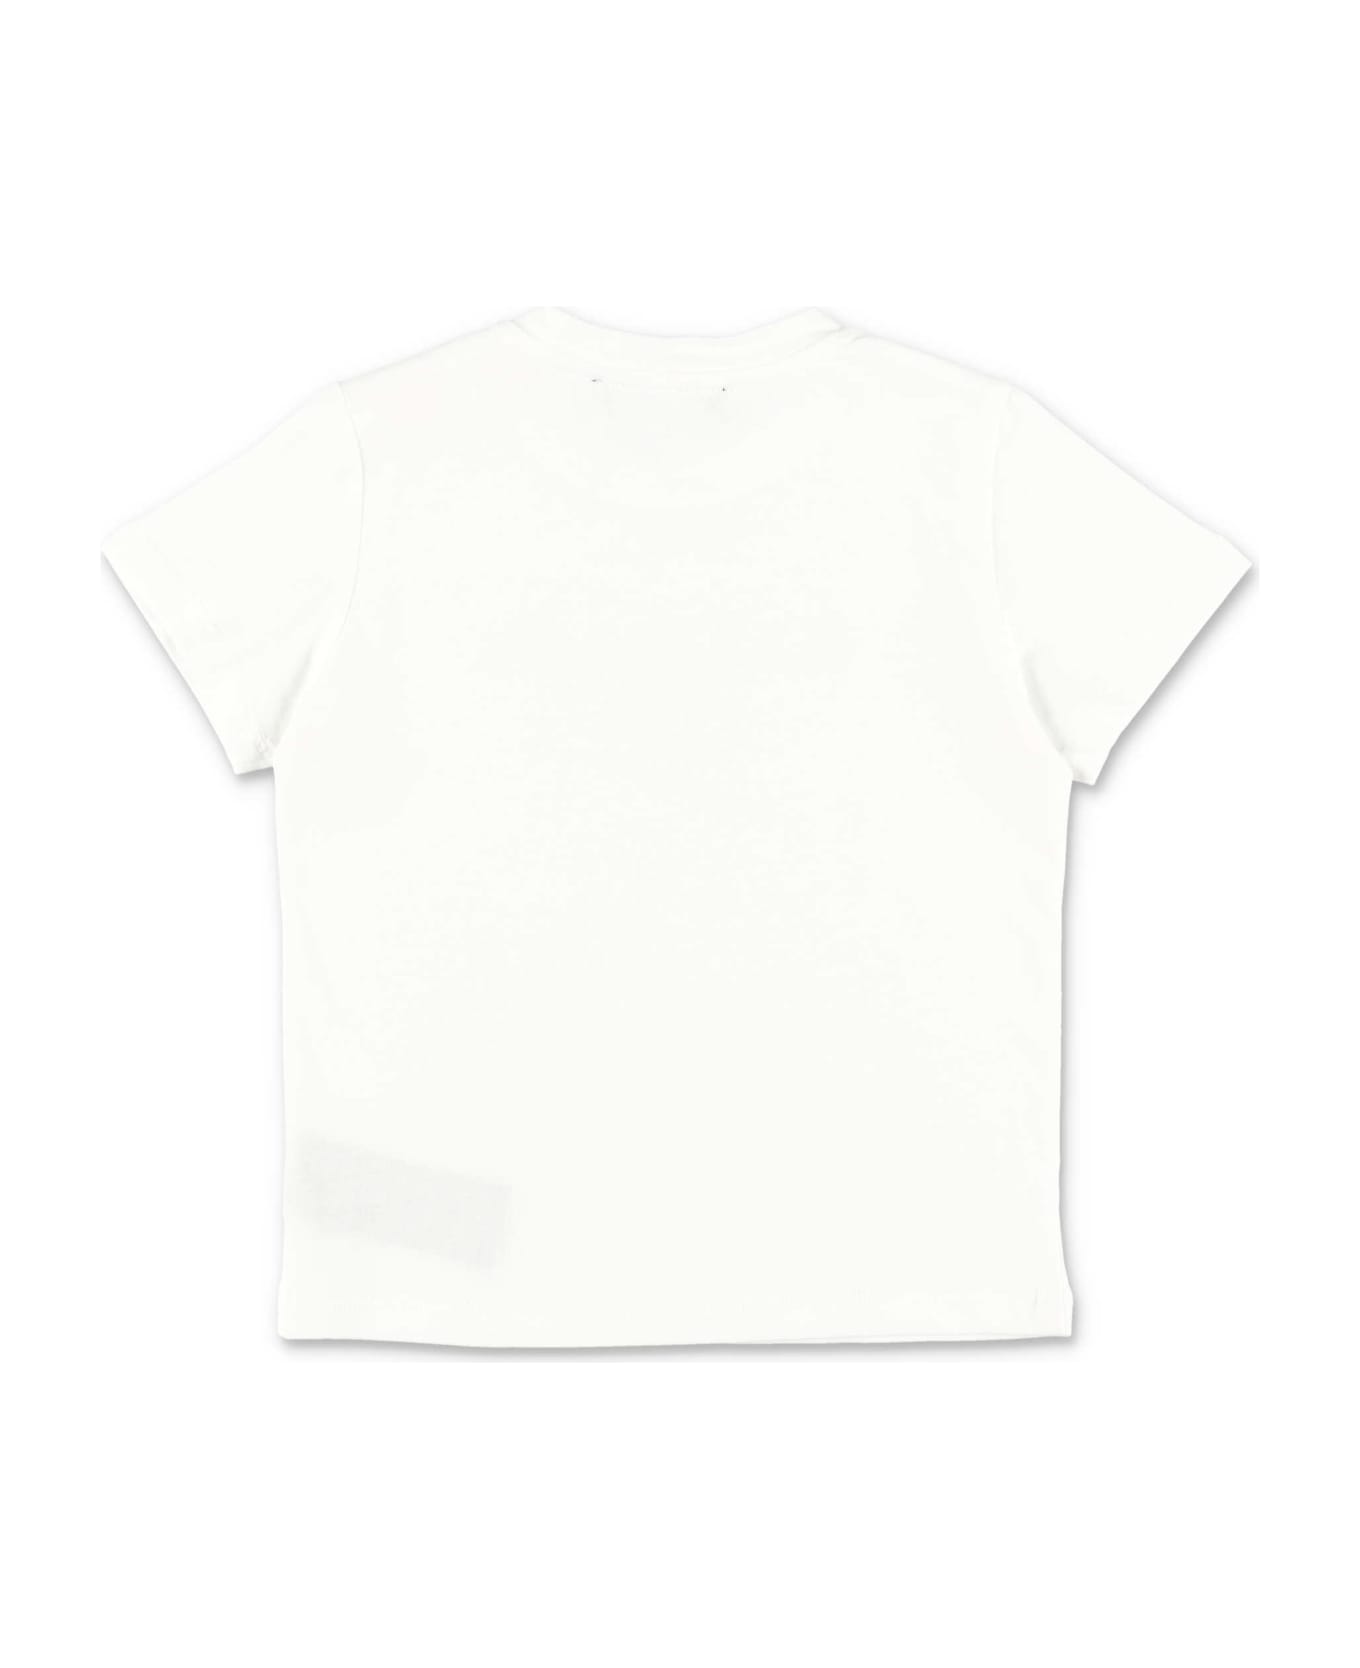 Balmain T-shirt Bianca In Jersey Di Cotone Baby Boy - Bianco